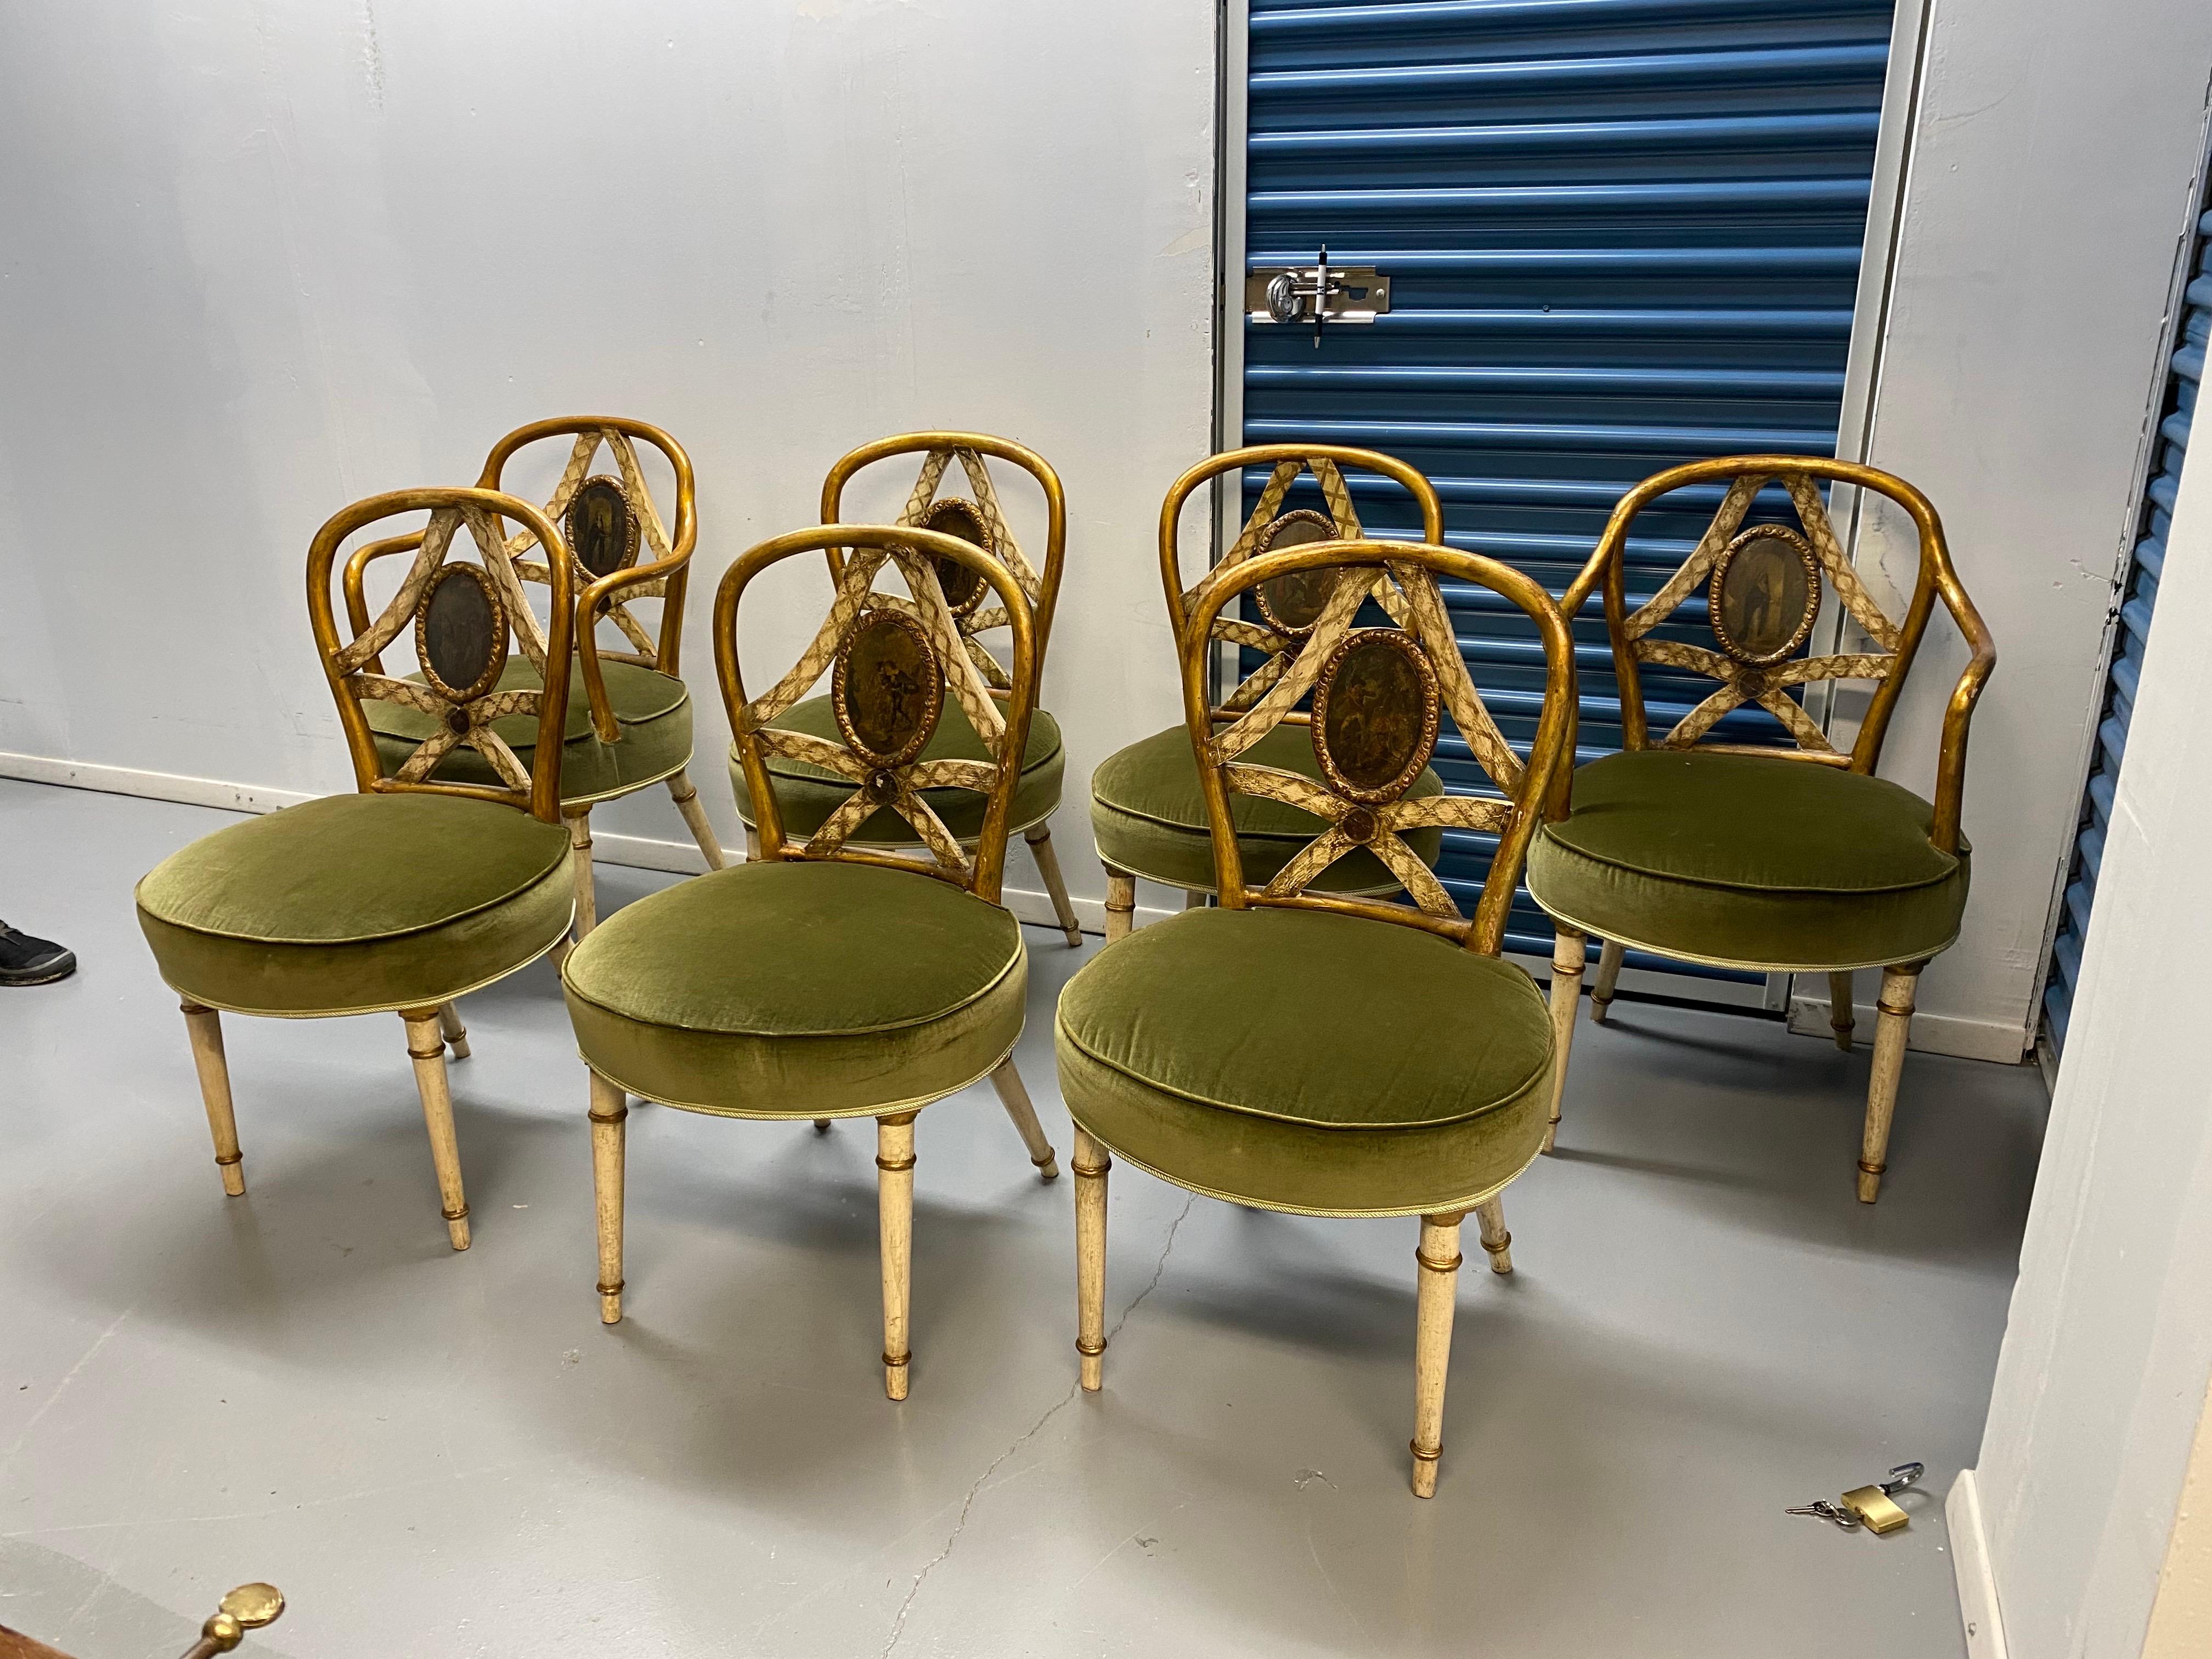 Ensemble de sept chaises de salle à manger italiennes peintes de la fin du XVIIIe siècle 
Rare et charmant ensemble de chaises de salle à manger italiennes peintes à la main, comprenant deux fauteuils et cinq chaises d'appoint peintes à la main avec